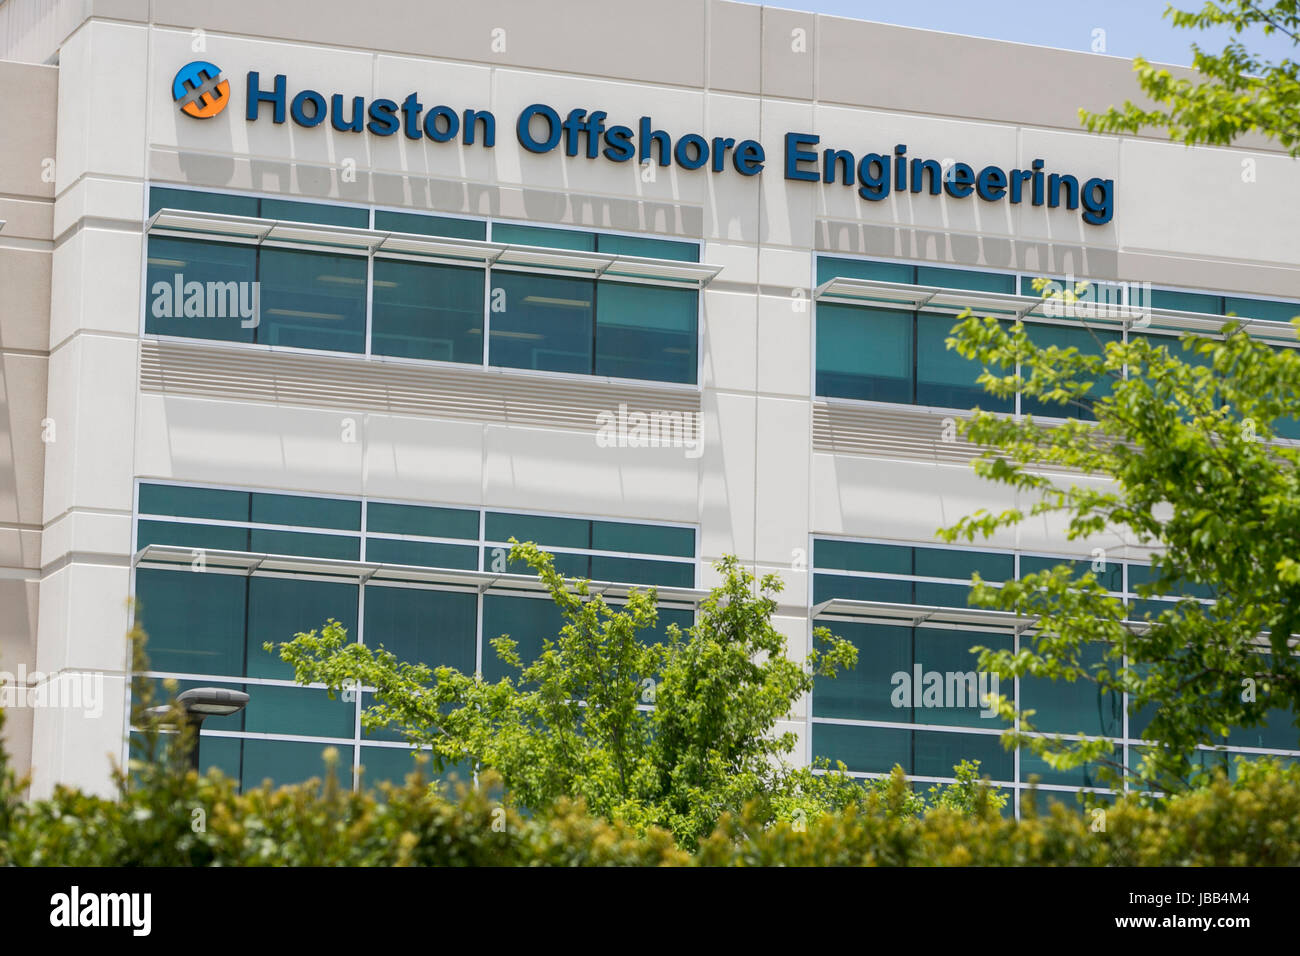 Un logotipo firmar fuera de la sede de ingeniería Offshore de Houston en Houston, Texas, el 27 de mayo de 2017. Foto de stock